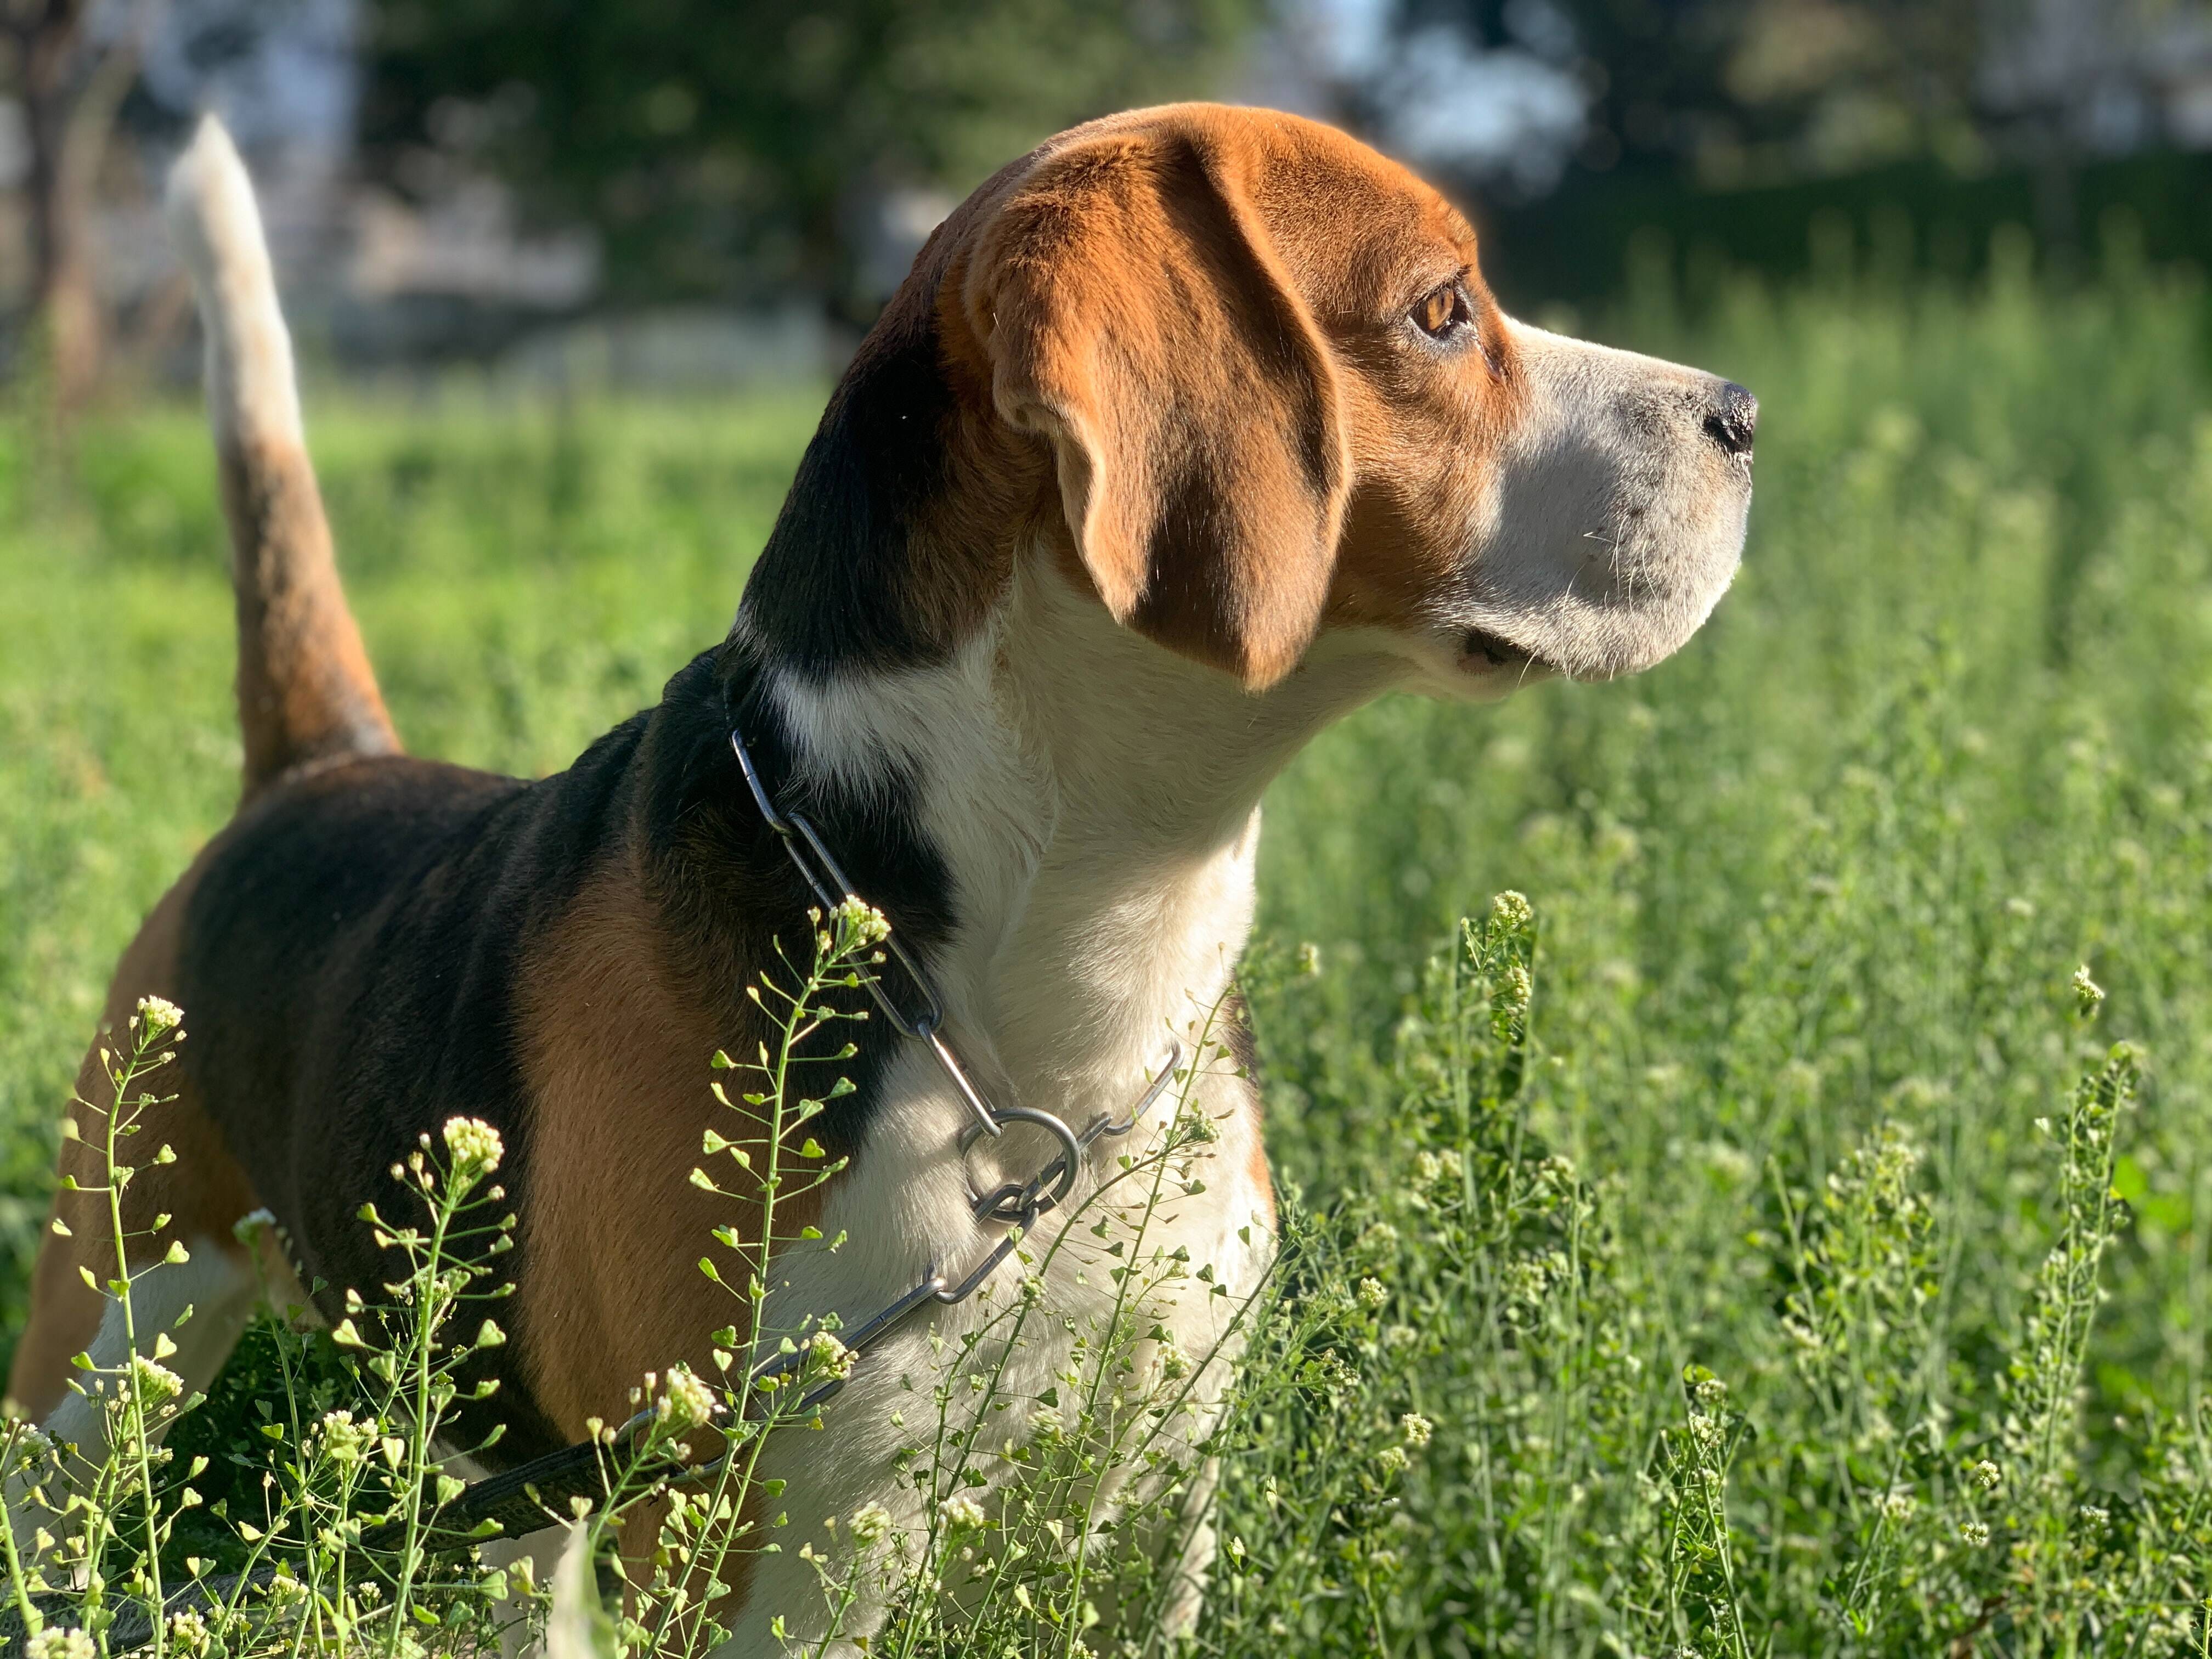 O Beagle adora explorar e seguir rastros, por isso é importante que vivam em quintais mudados. Foto: Jaspal Kahlon/Unsplash